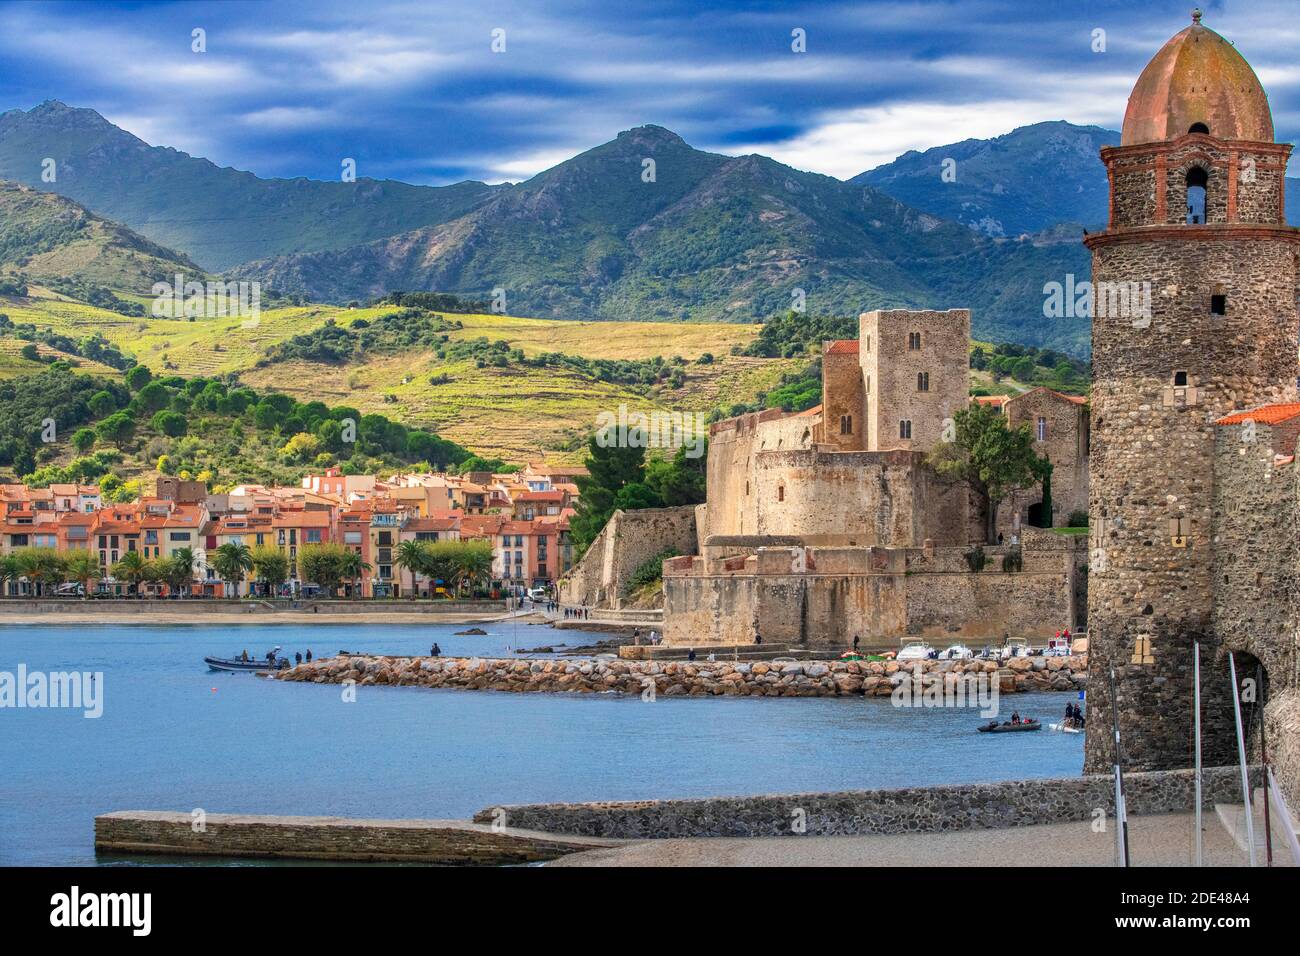 Kirche Notre-Dame-des-Anges und Landschaft Strand am Meer des malerischen Dorfes Collioure, in der Nähe von Perpignan im Süden Frankreichs Languedoc-Roussillo Stockfoto